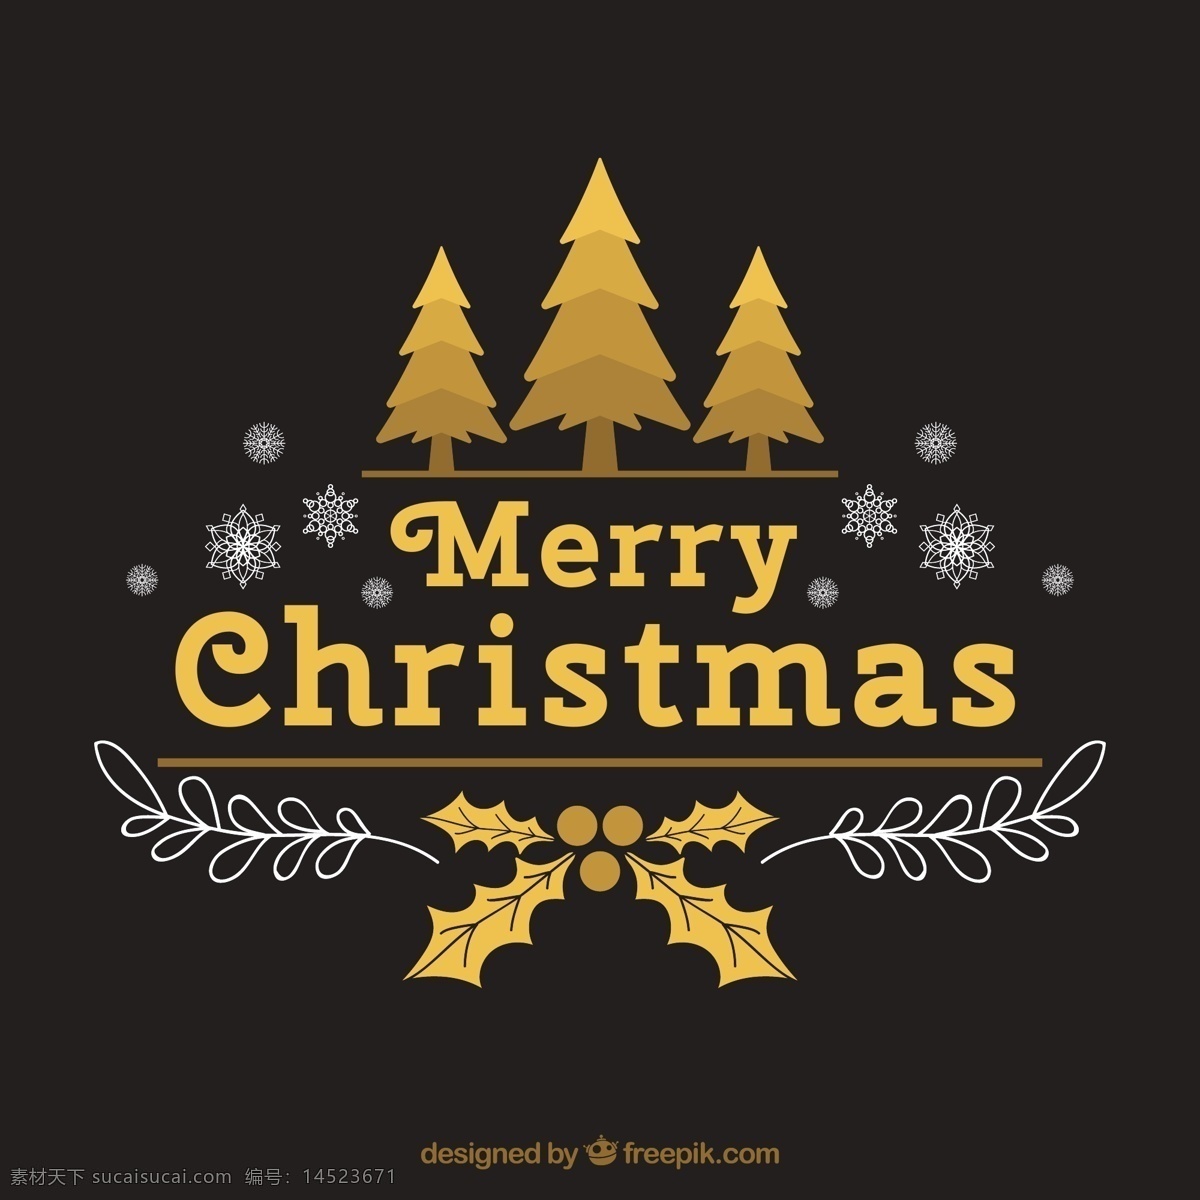 金色 圣诞树 枸 骨 节日 贺卡 矢量 矢量图 枸骨 雪花 花纹 圣诞节